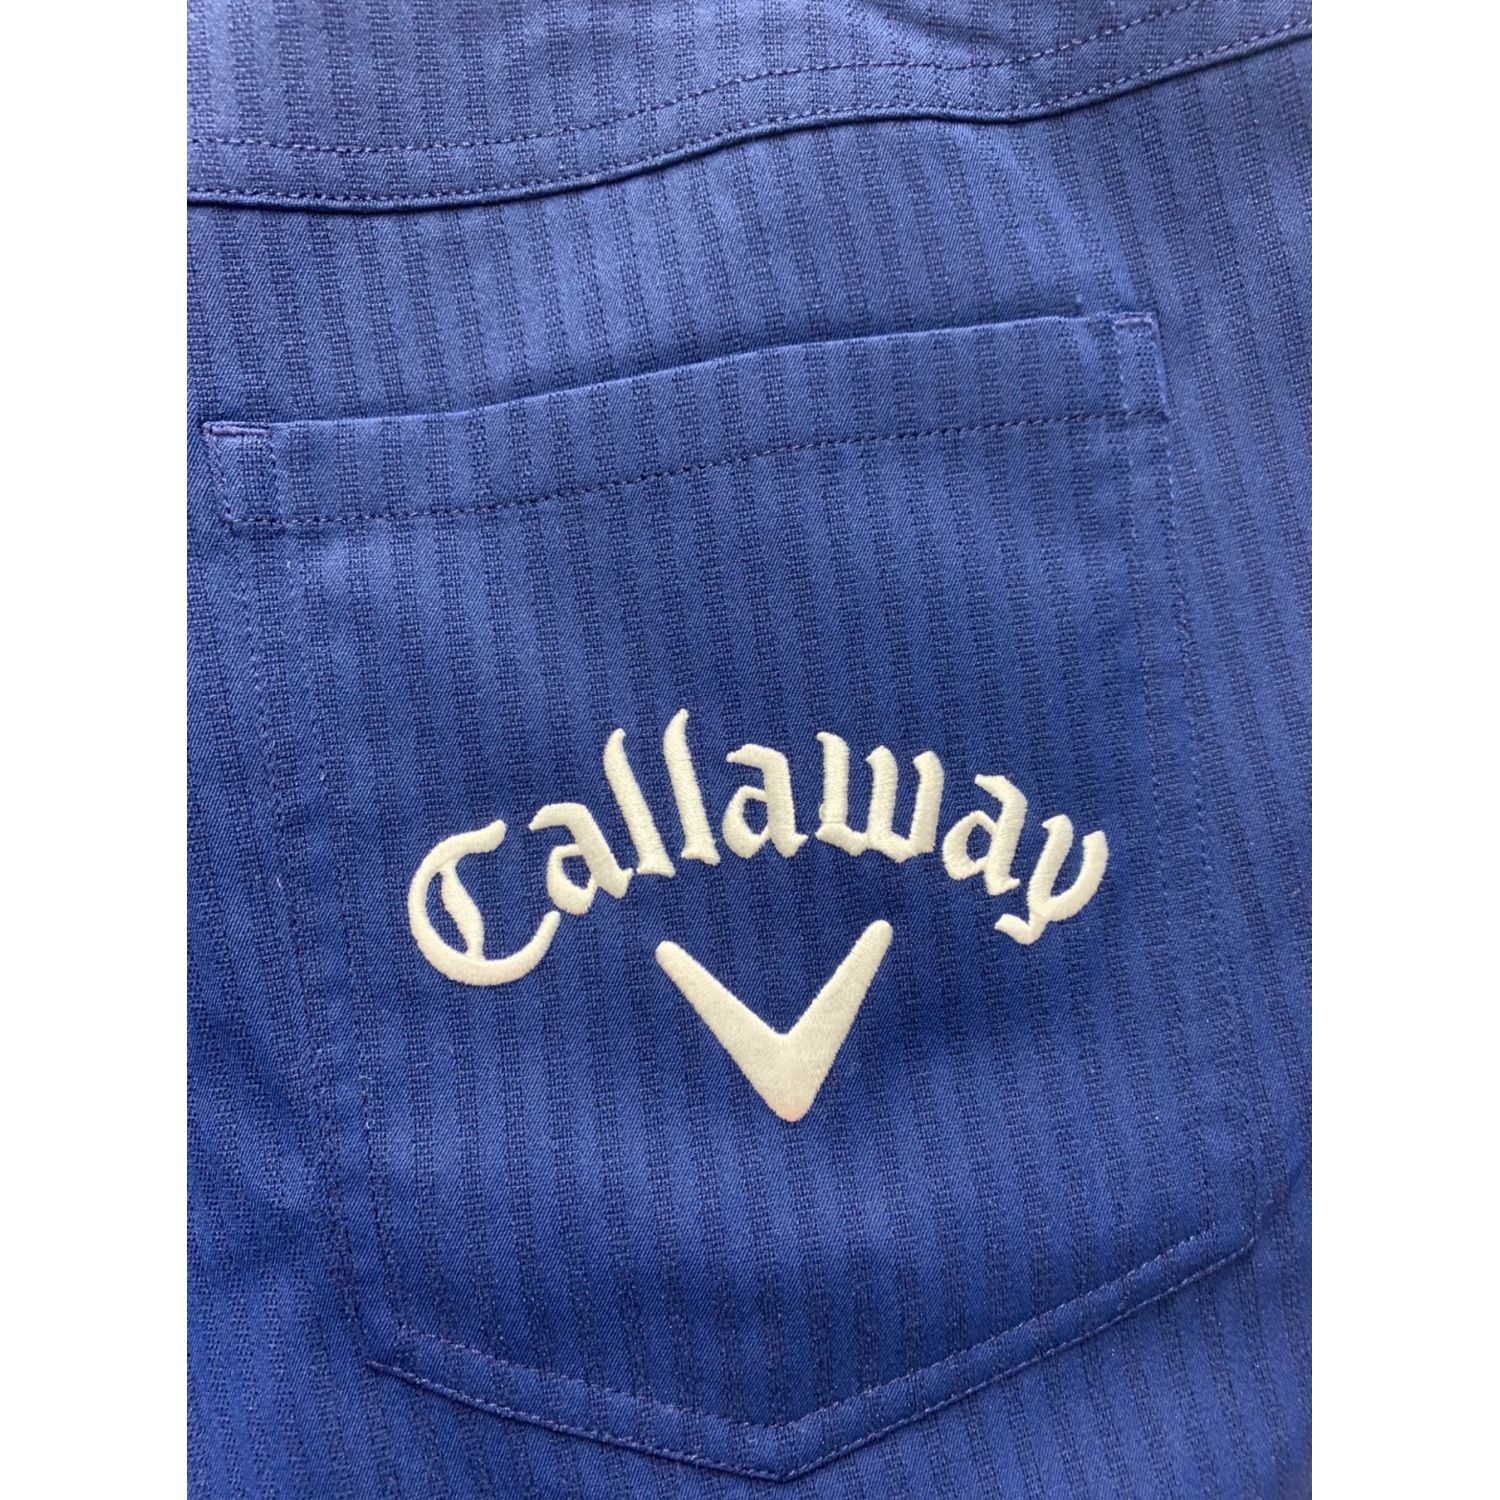 Callaway (キャロウェイ) ゴルフウェア(パンツ) メンズ SIZE XL